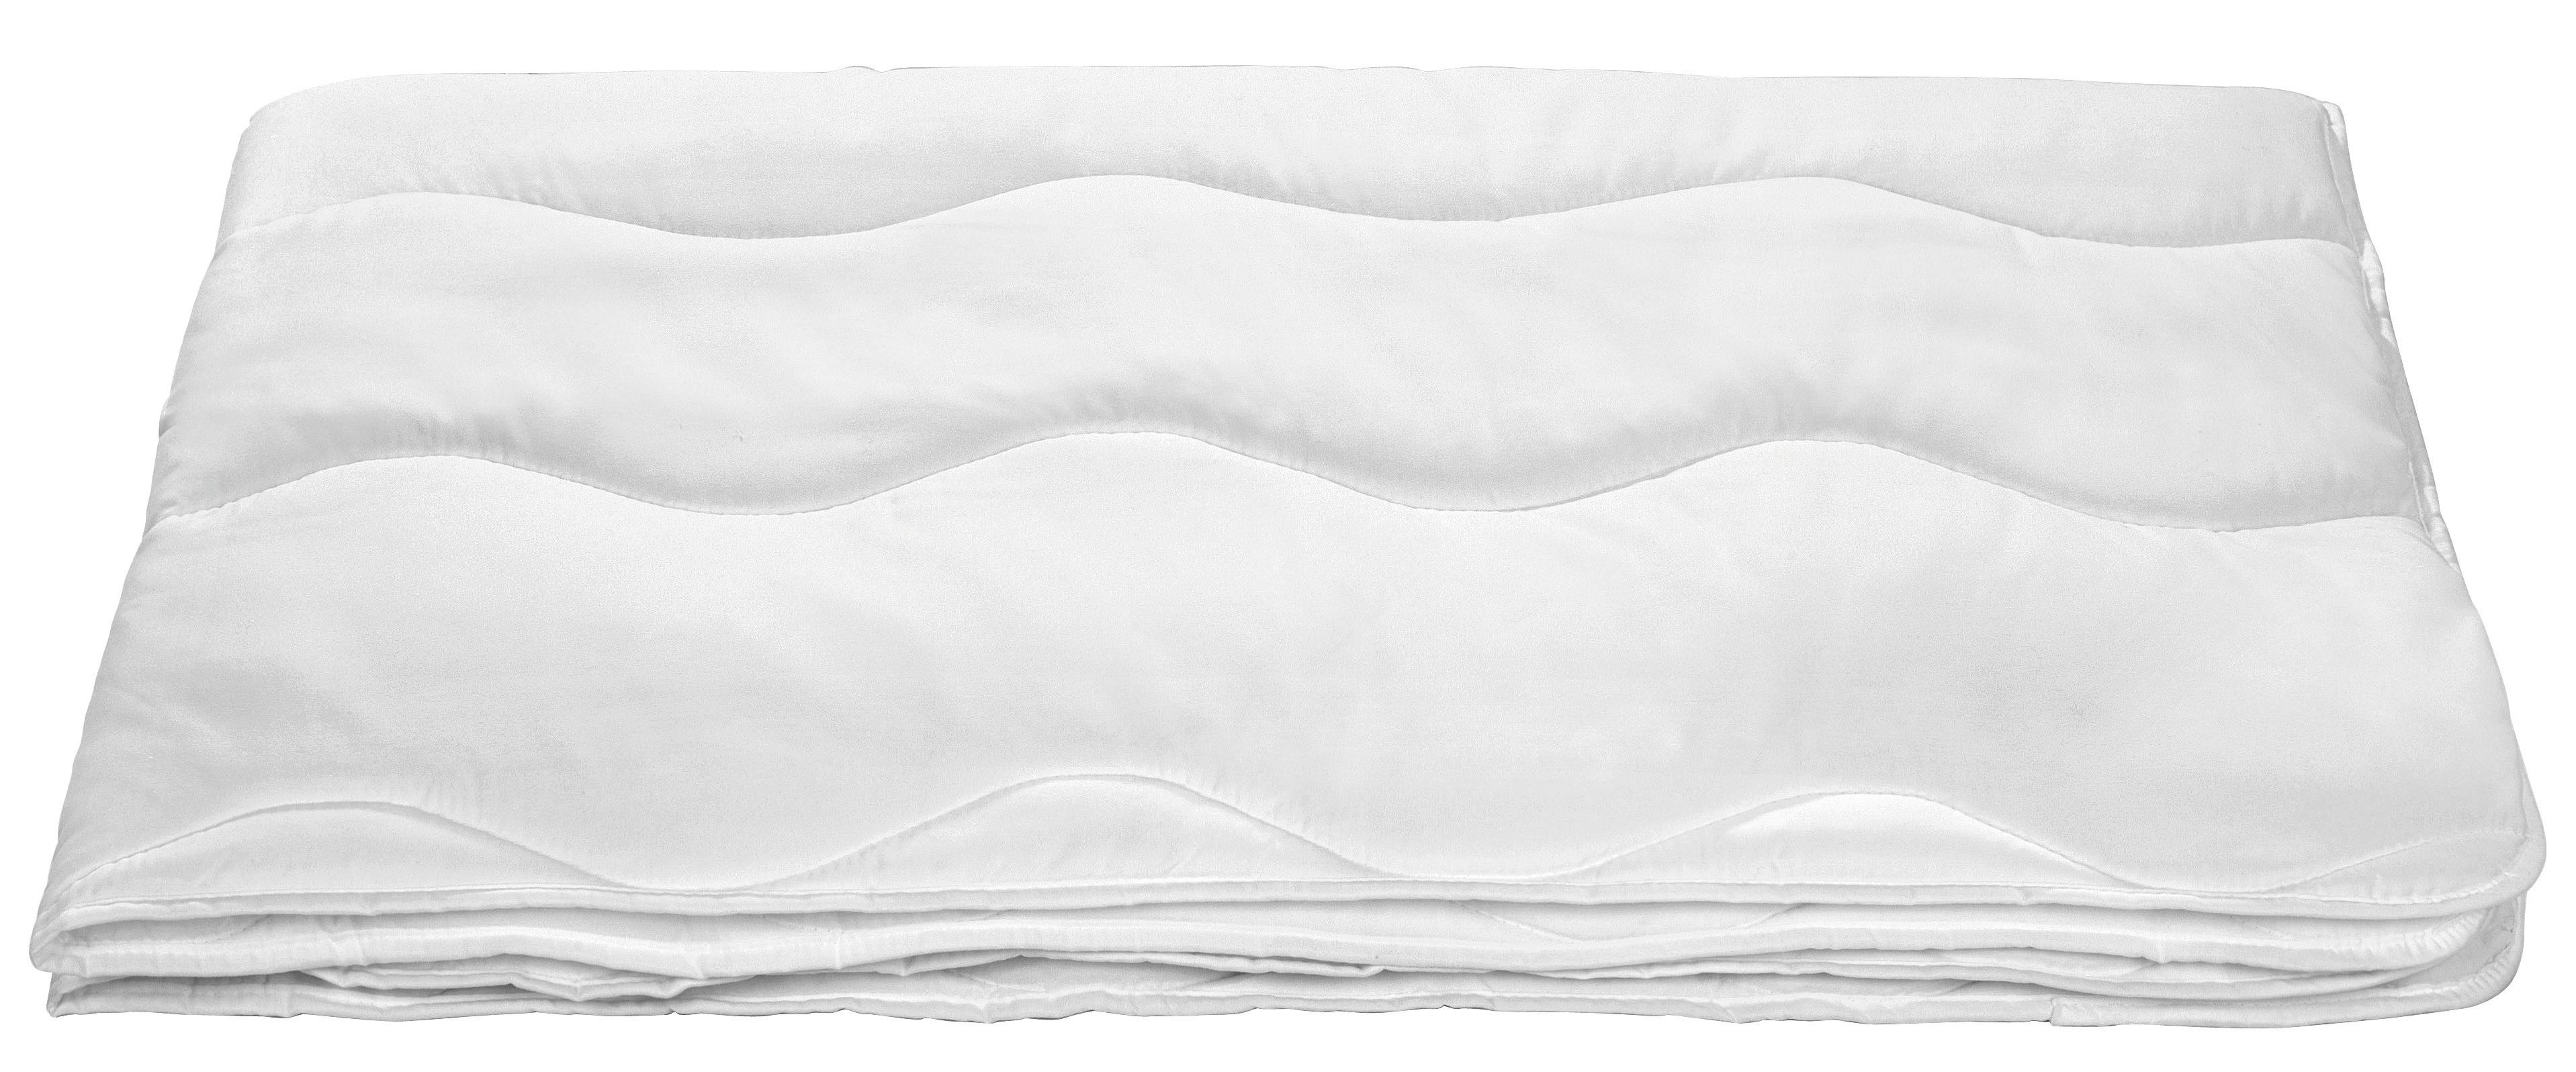 Steppdecke Linda 140x200 cm - Weiß, KONVENTIONELL, Textil (140/200cm) - Primatex